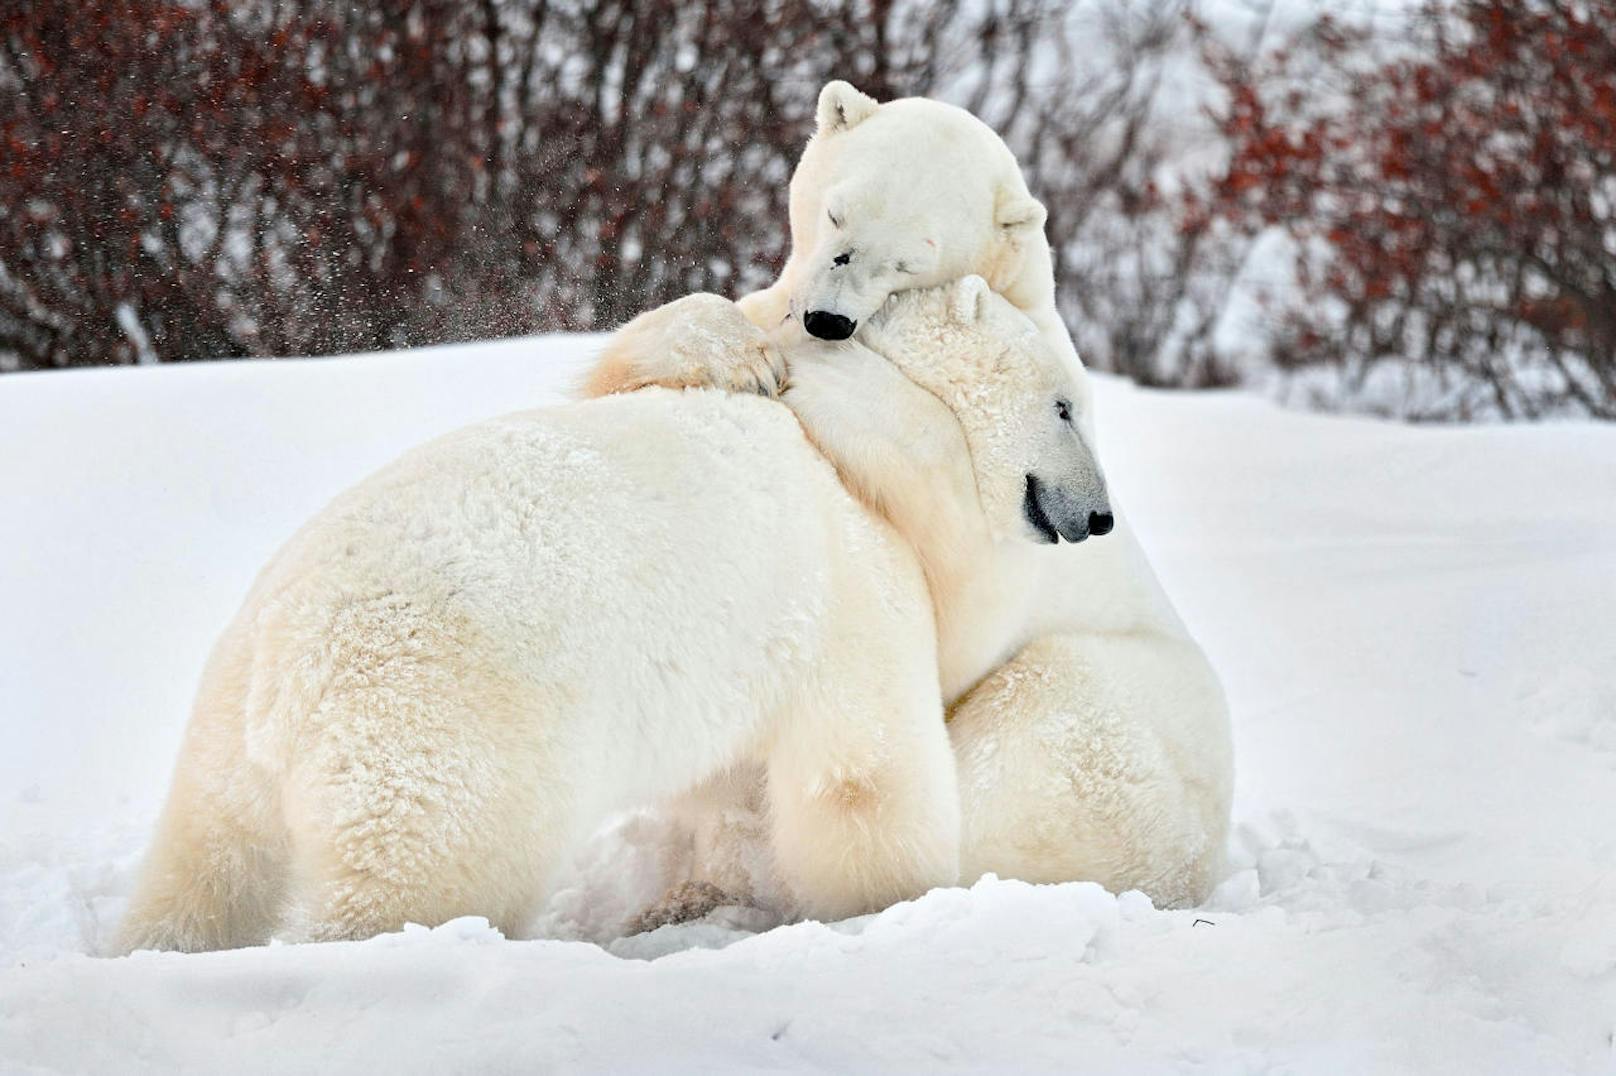 <b>Kuscheln statt kämpfen!</b> Zwei Eisbären zeigen ihre weiche Seite. Während dem Spielen im Schnee nehmen sie sich Zeit für eine Umarmung.